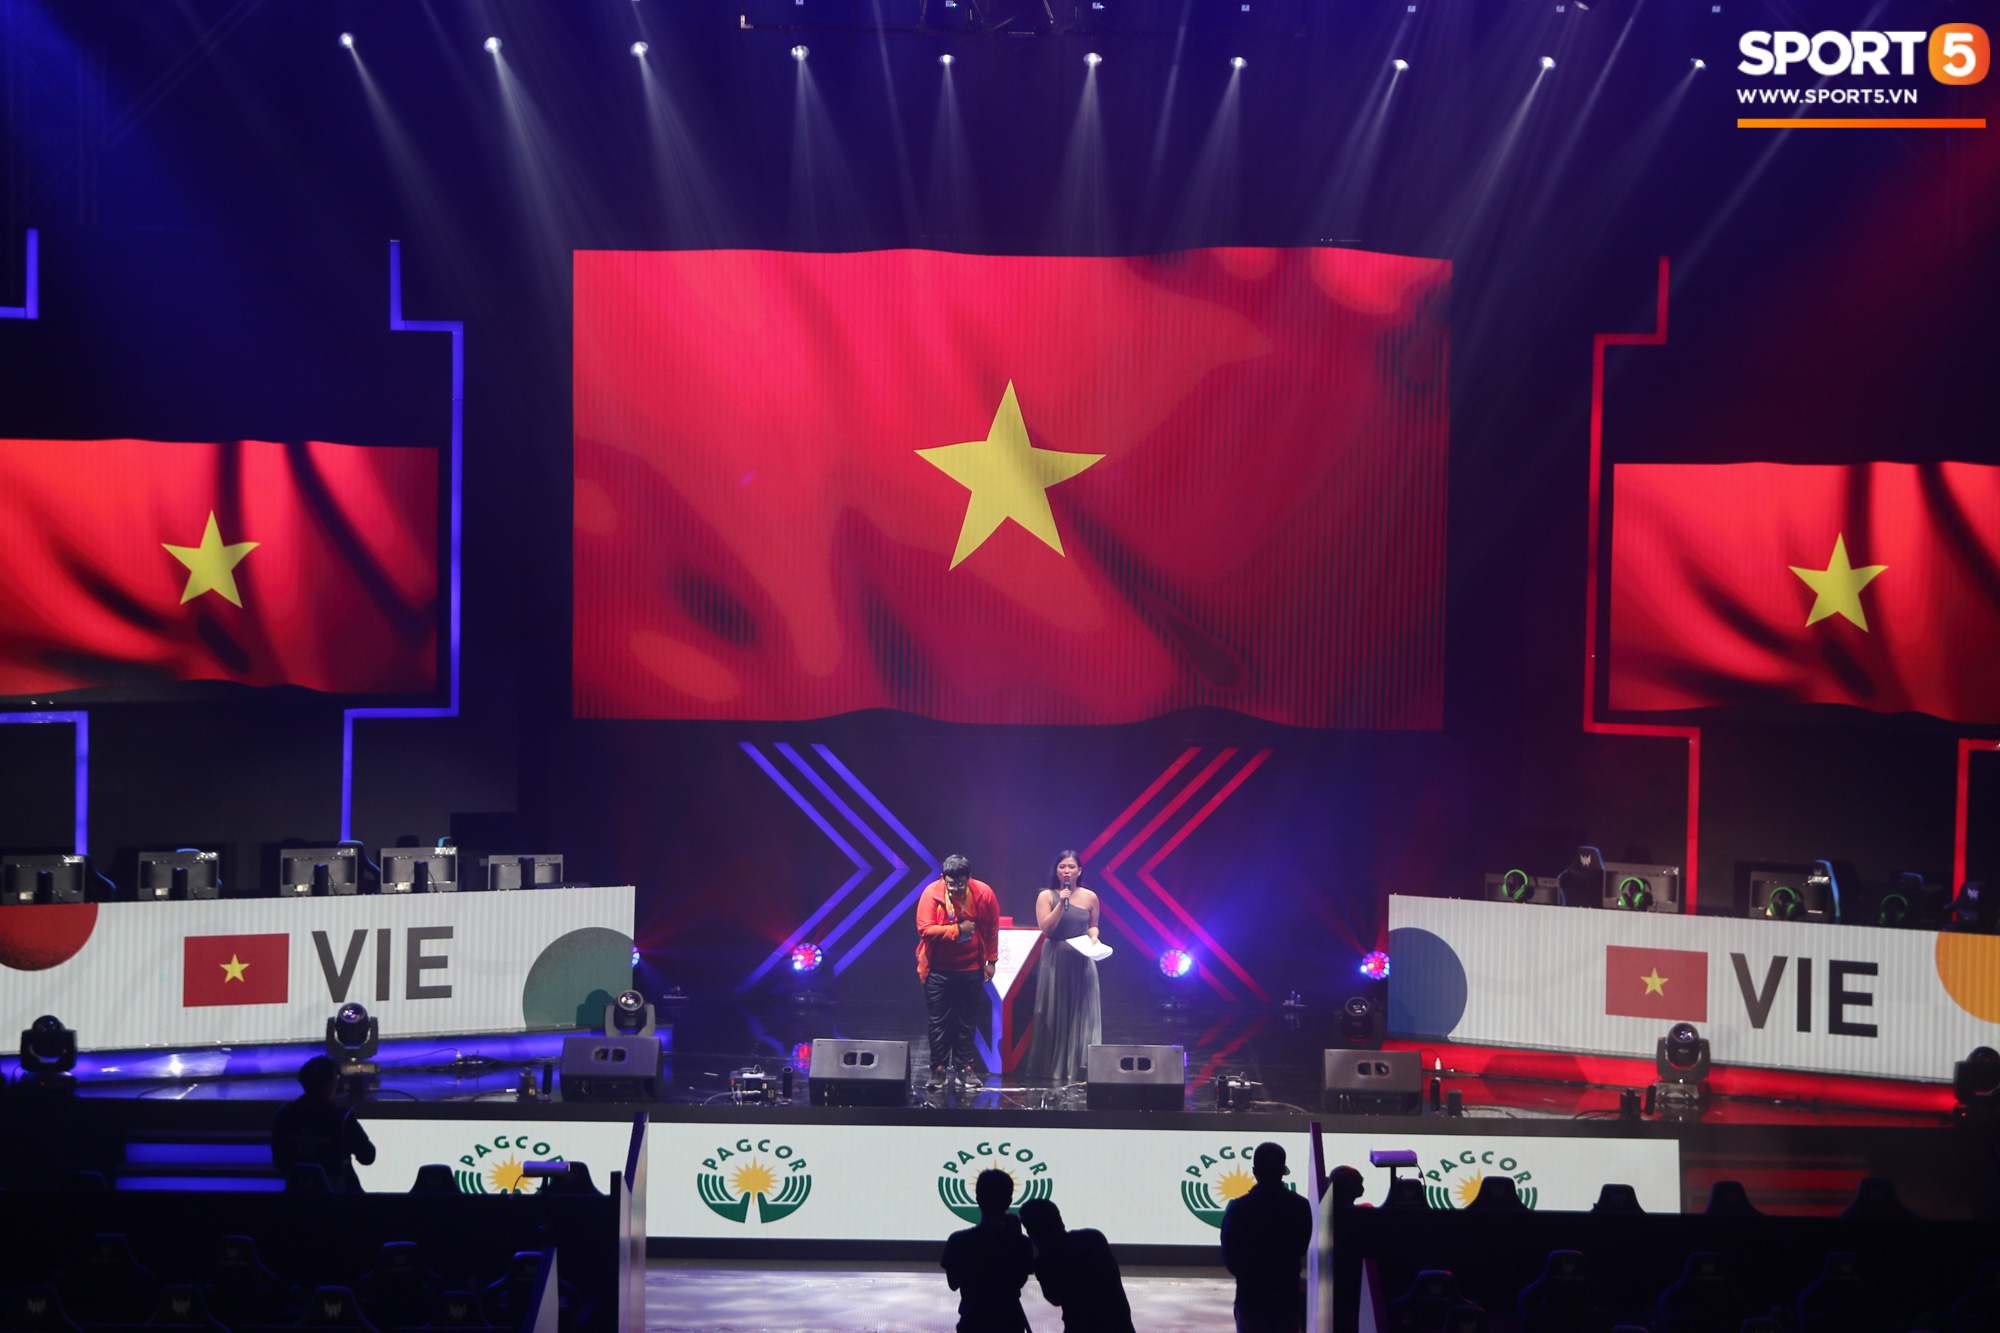 Kỳ vọng vàng của Esports Việt Nam kết thúc SEA Games 30 với tấm HCĐ: Hôm nay, mình đã làm không tốt - Ảnh 3.